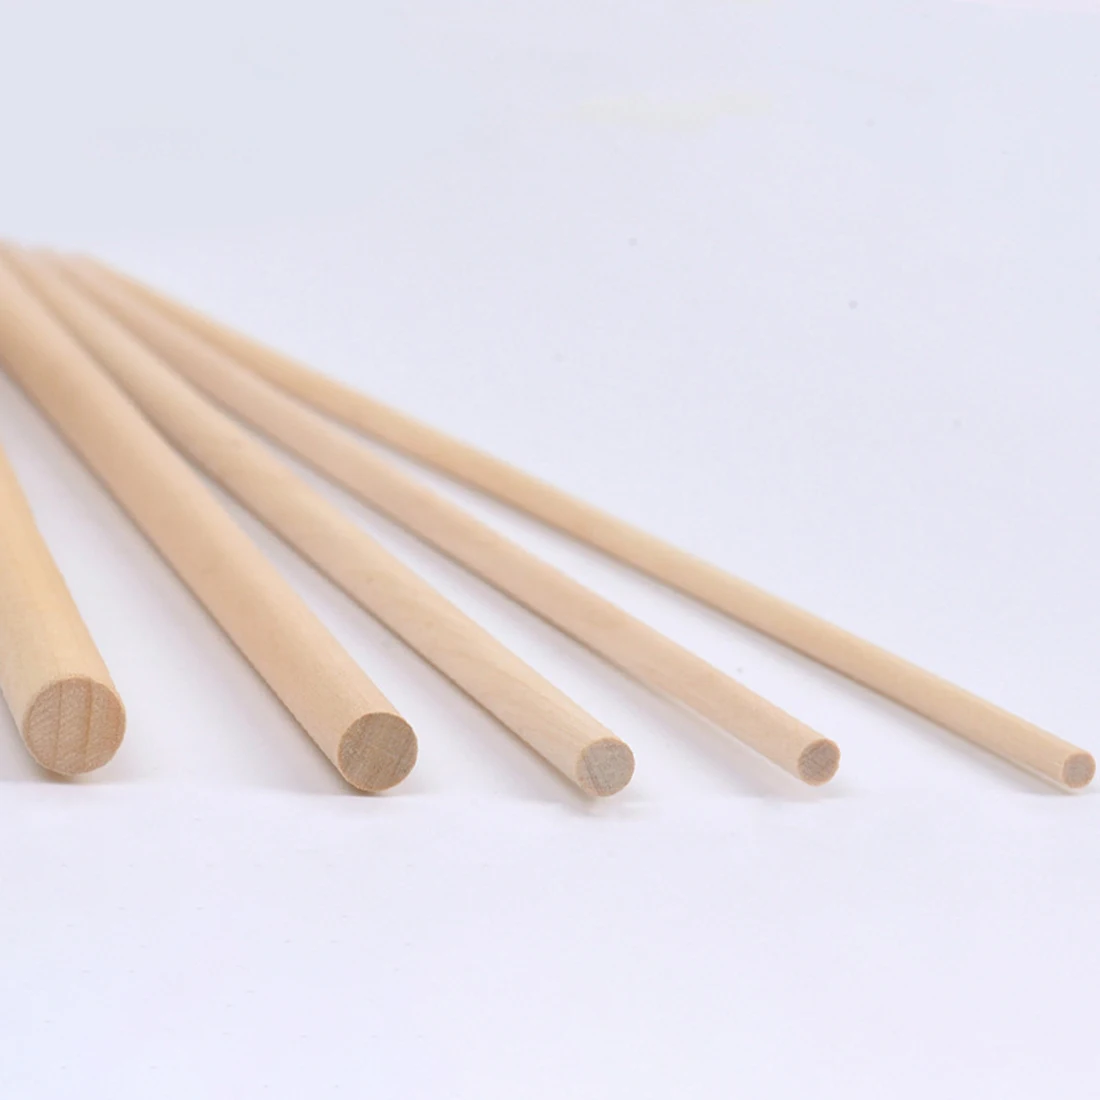 5 шт. 50 см(L) 15 мм(D) деревянные березовые палочки для DIY песчаного стола макет архитектурная модель